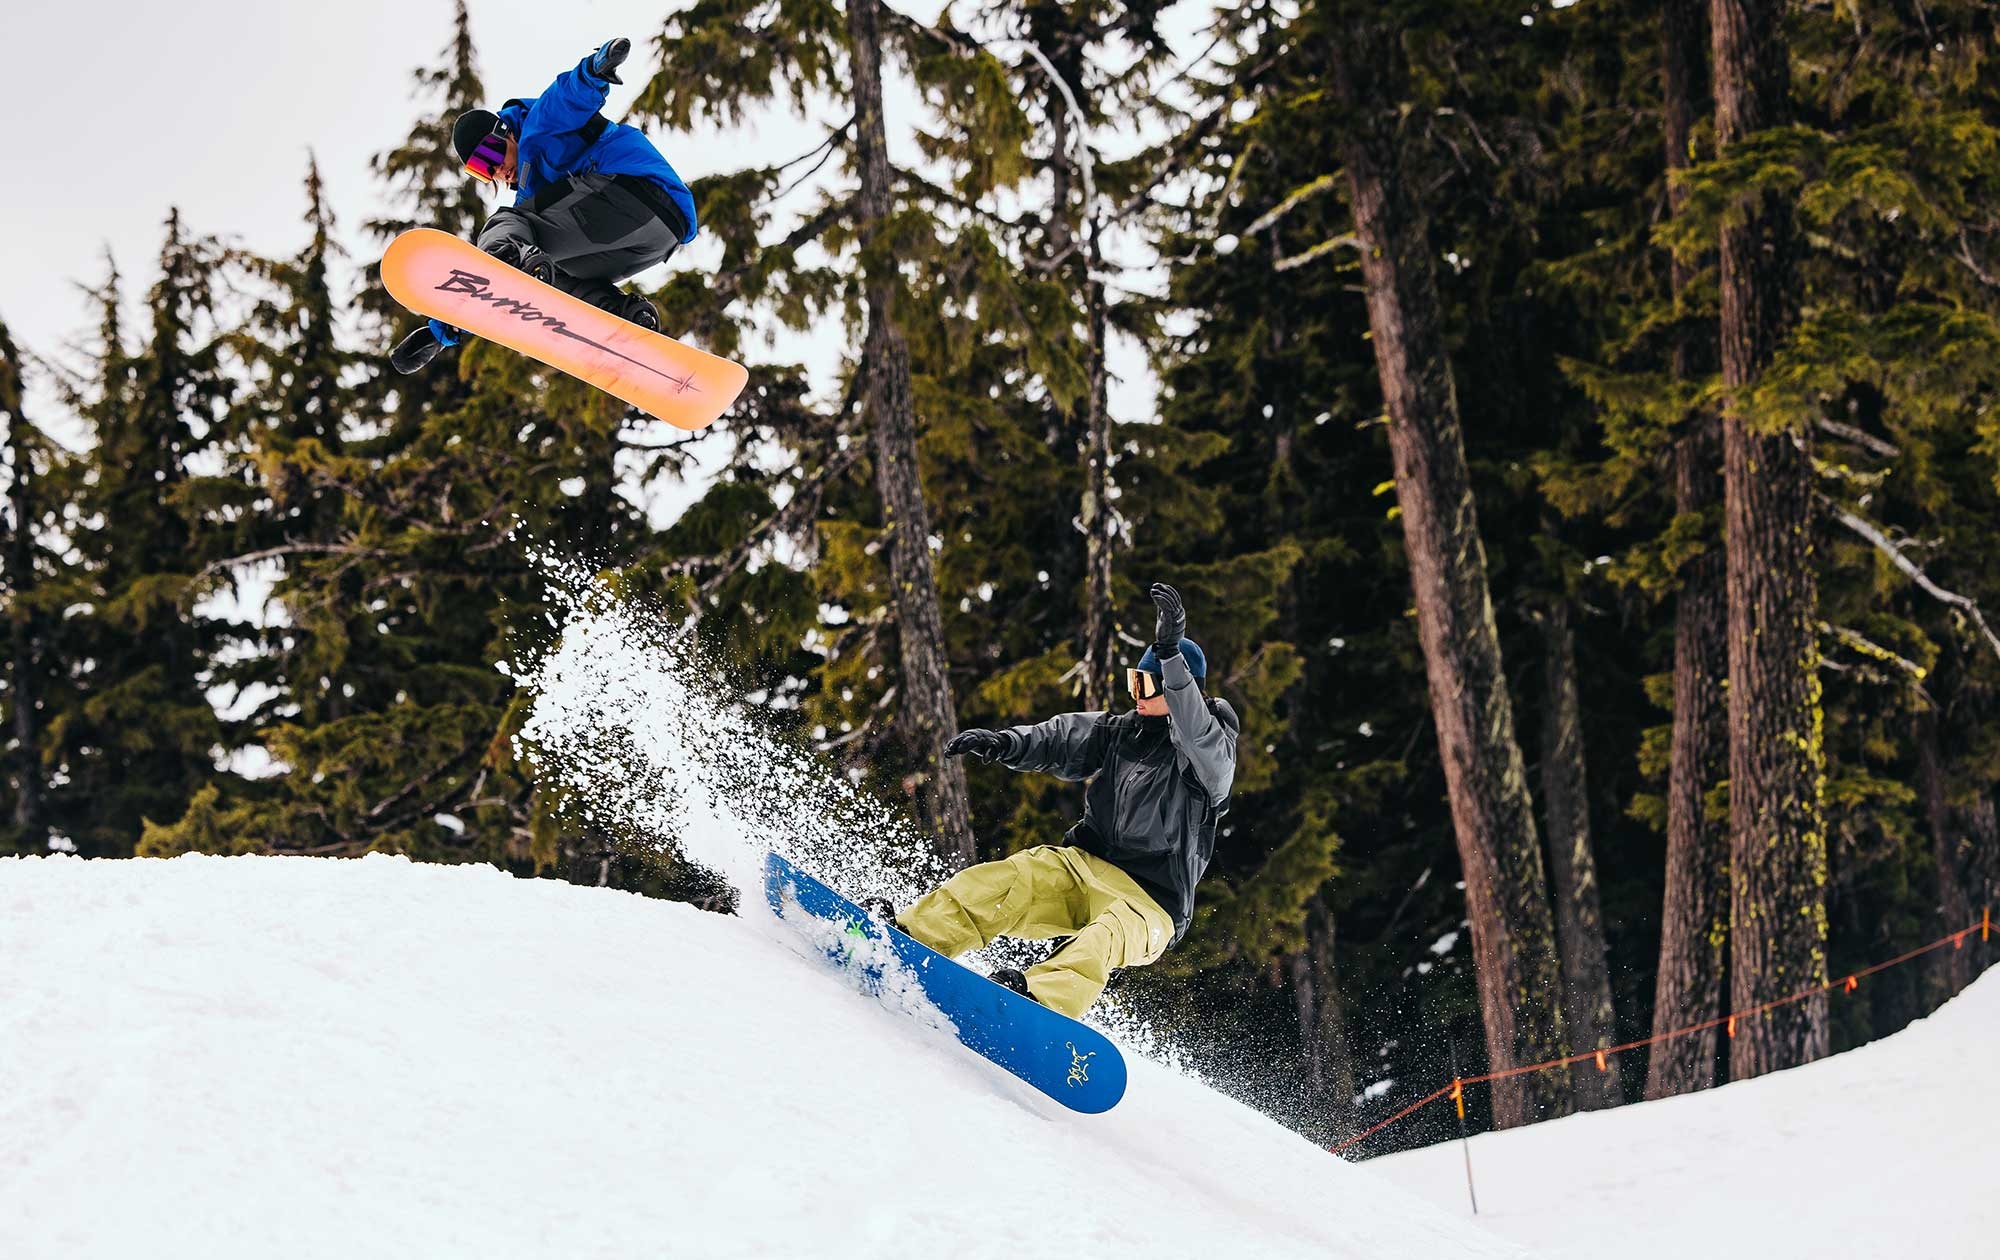 Burton Snowboards Onlineshop